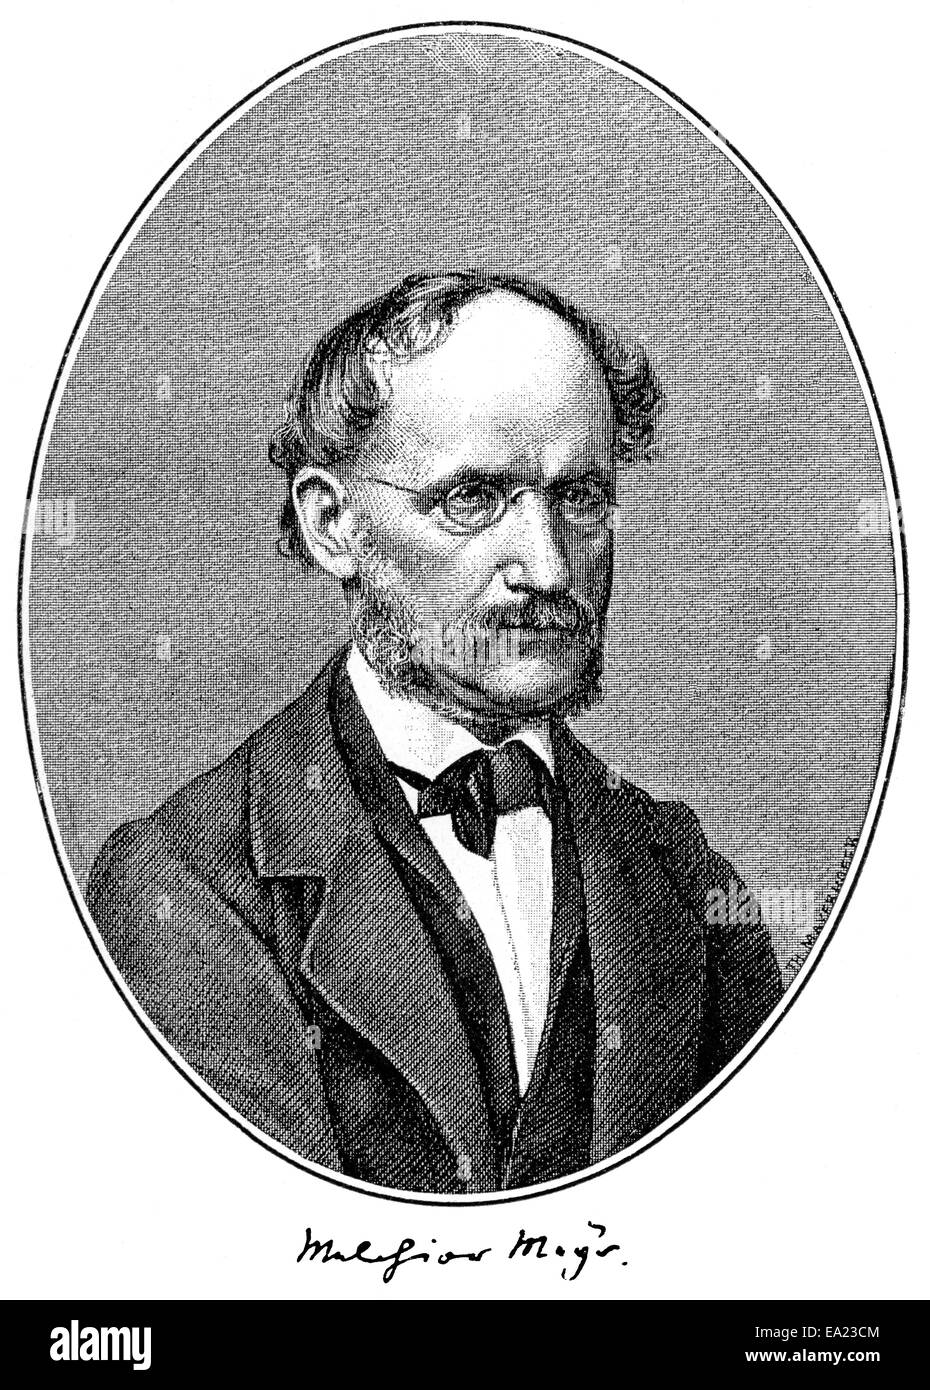 Melchior Mey, 1810 - 1871, poeta y filósofo alemán, Portait von Melchior Mey, 1810 - 1871, ein deutscher Dichter und Philoso Foto de stock